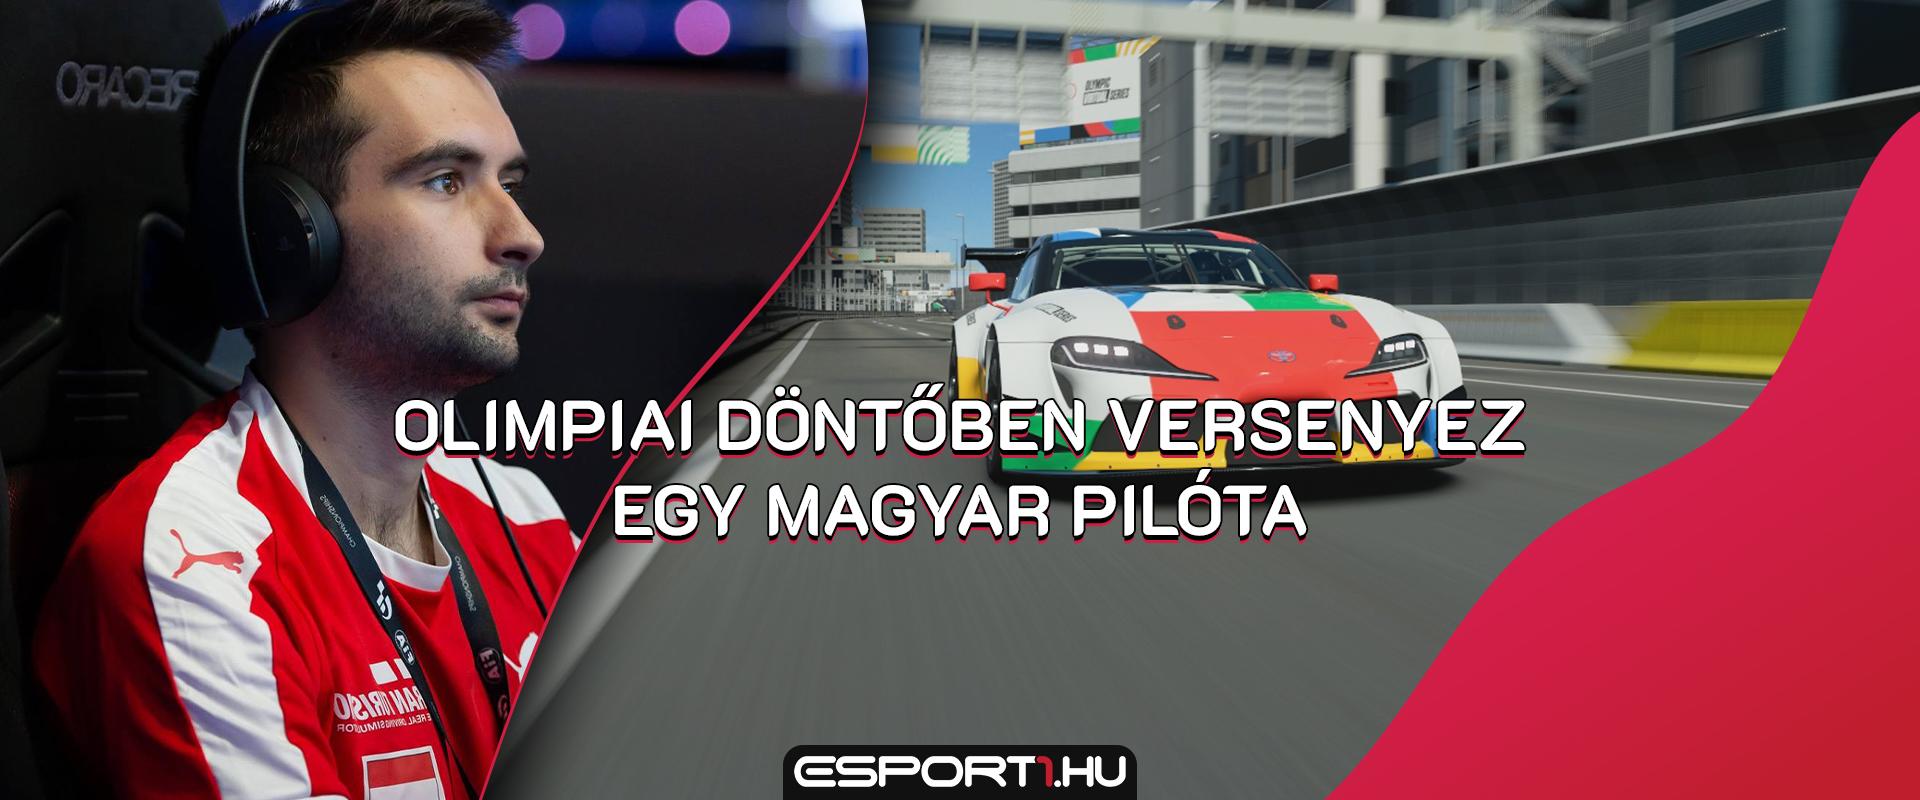 Gran Turismo: Új olimipai (e-)sportjáték magyar versenyzővel a döntőben